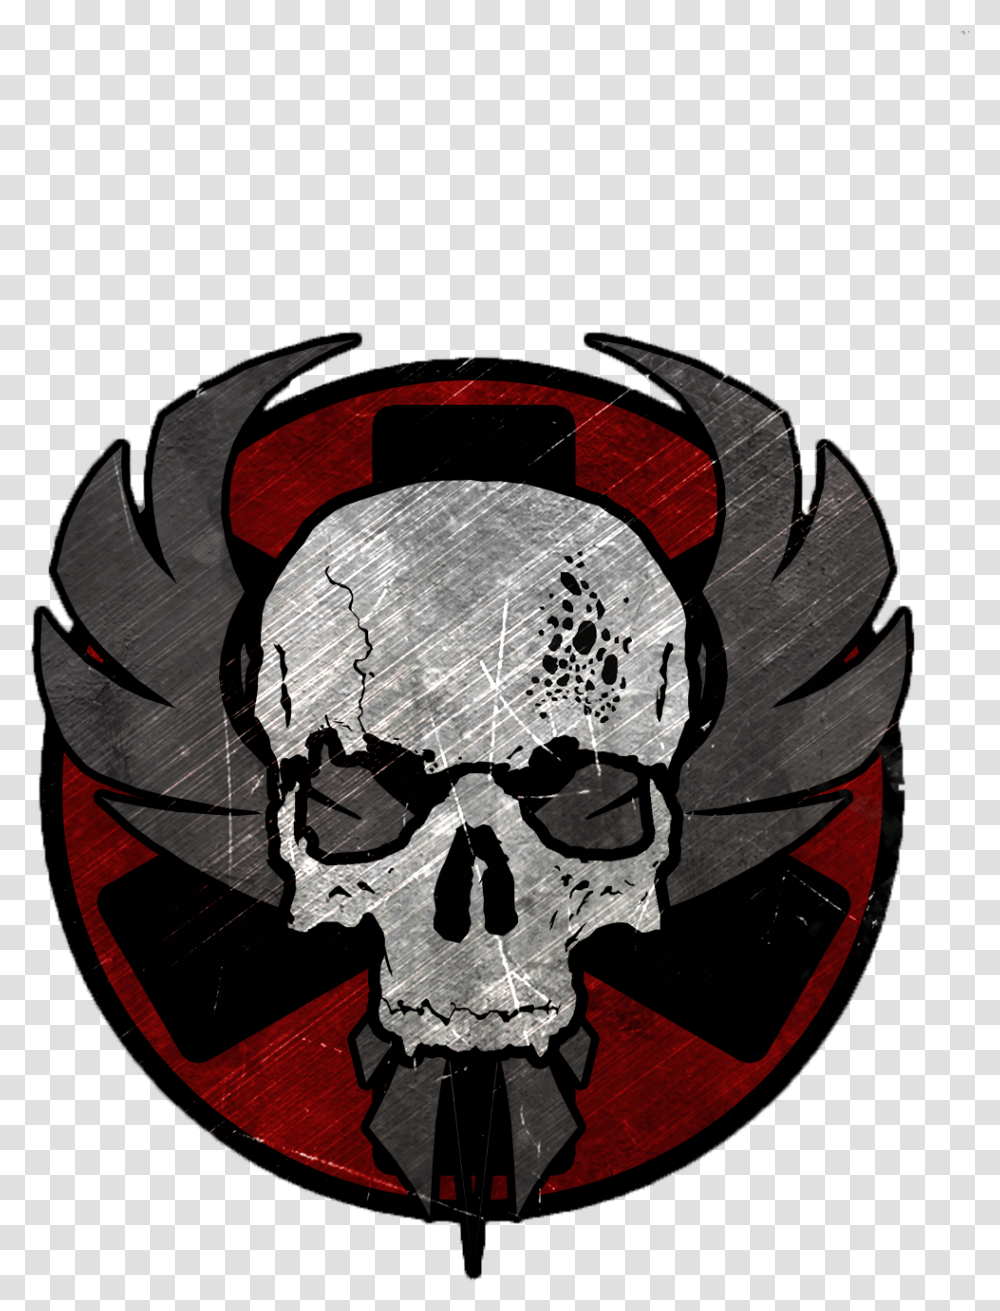 Skull, Label, Helmet Transparent Png